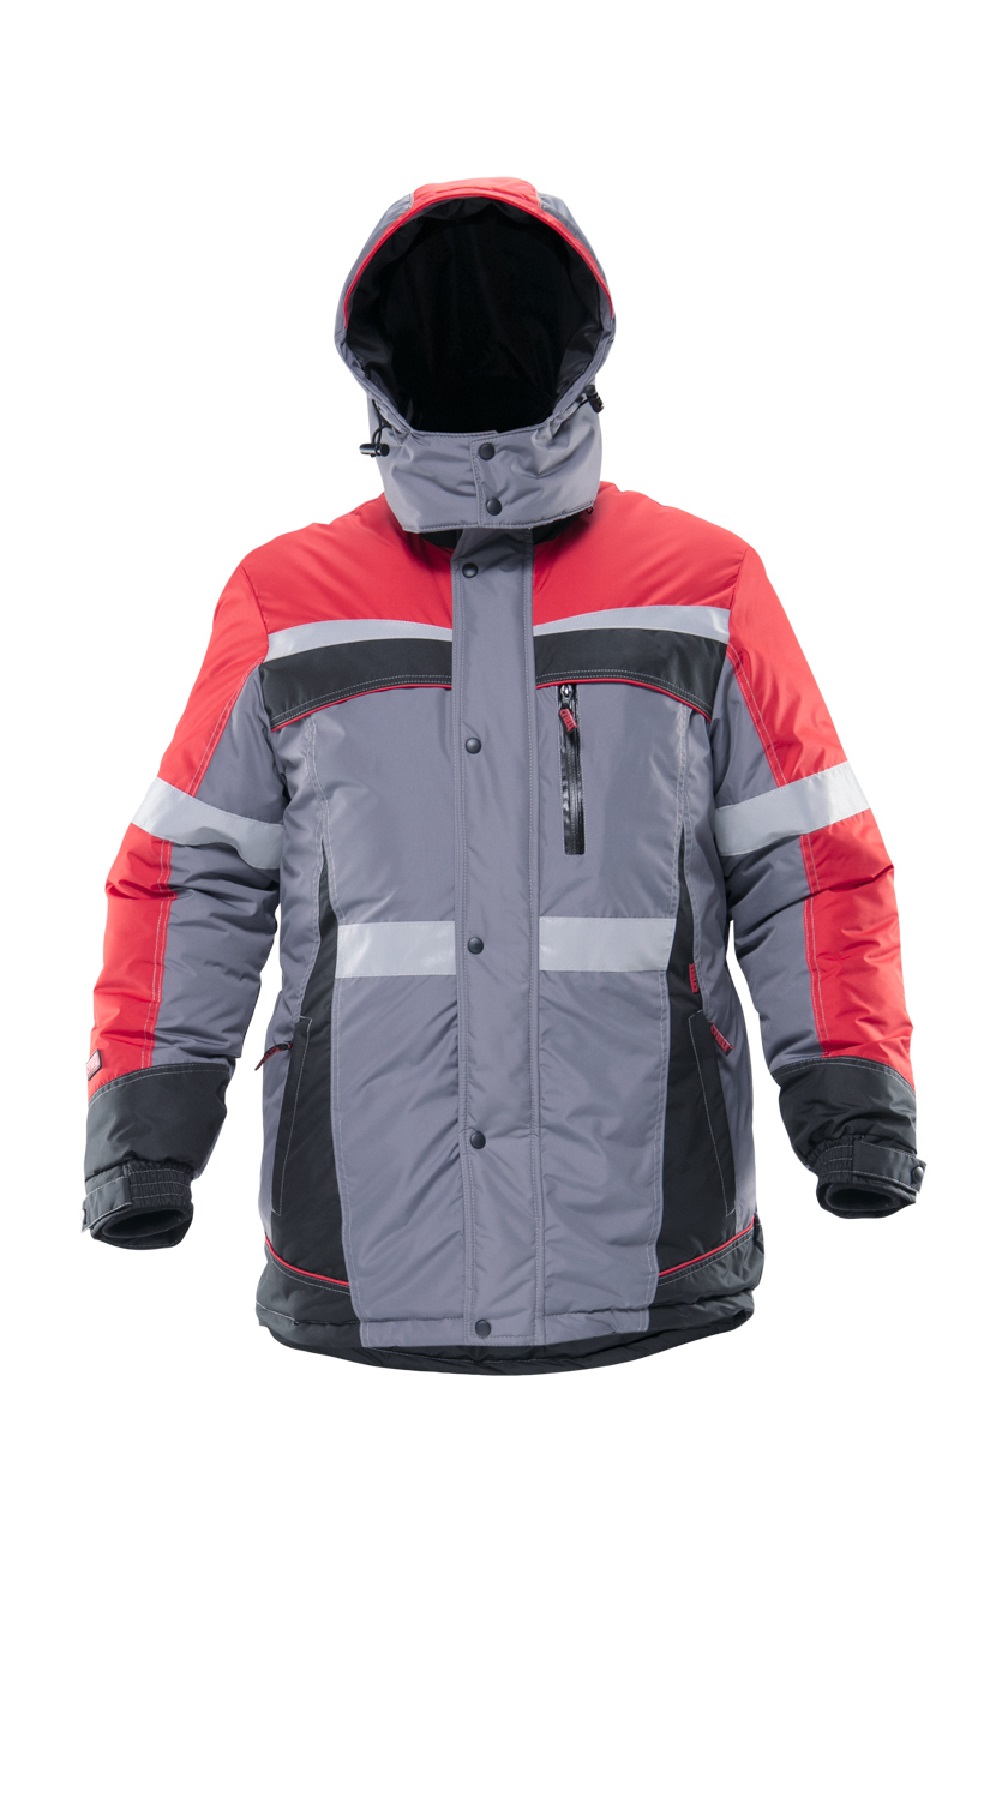 Зимняя куртка "СПЕЦ" мужская, удлиненная, утепленная, цвет: серо-красно-черный, ткань: 100% МикроПЭ